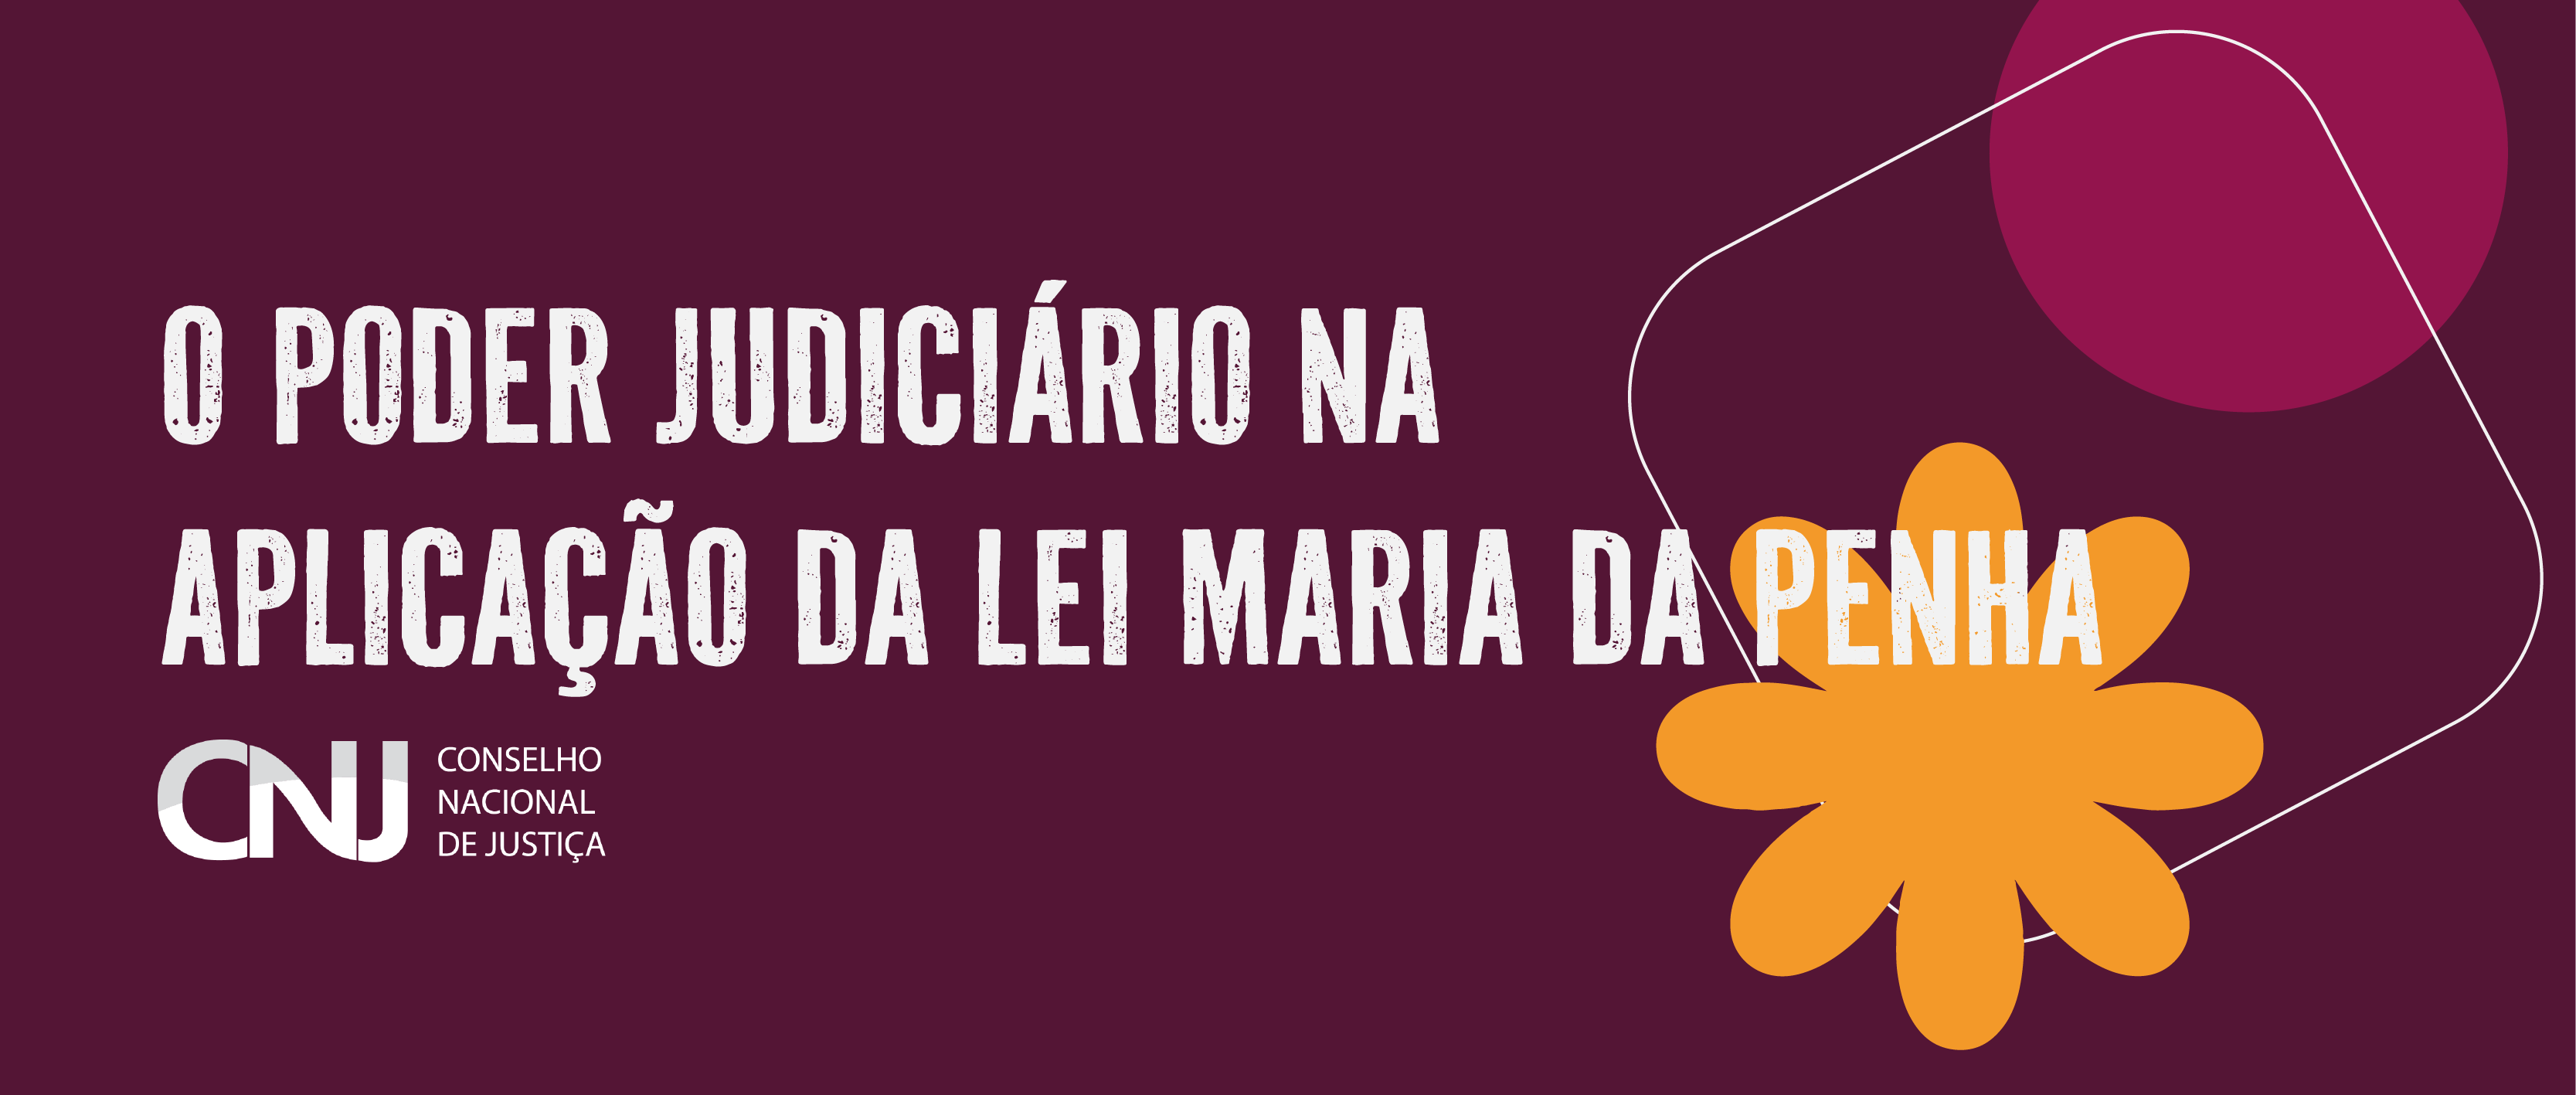 O poder Judiciário na aplicação da Lei Maria da Penha - CNJ - Conselho Nacional de Justiça 